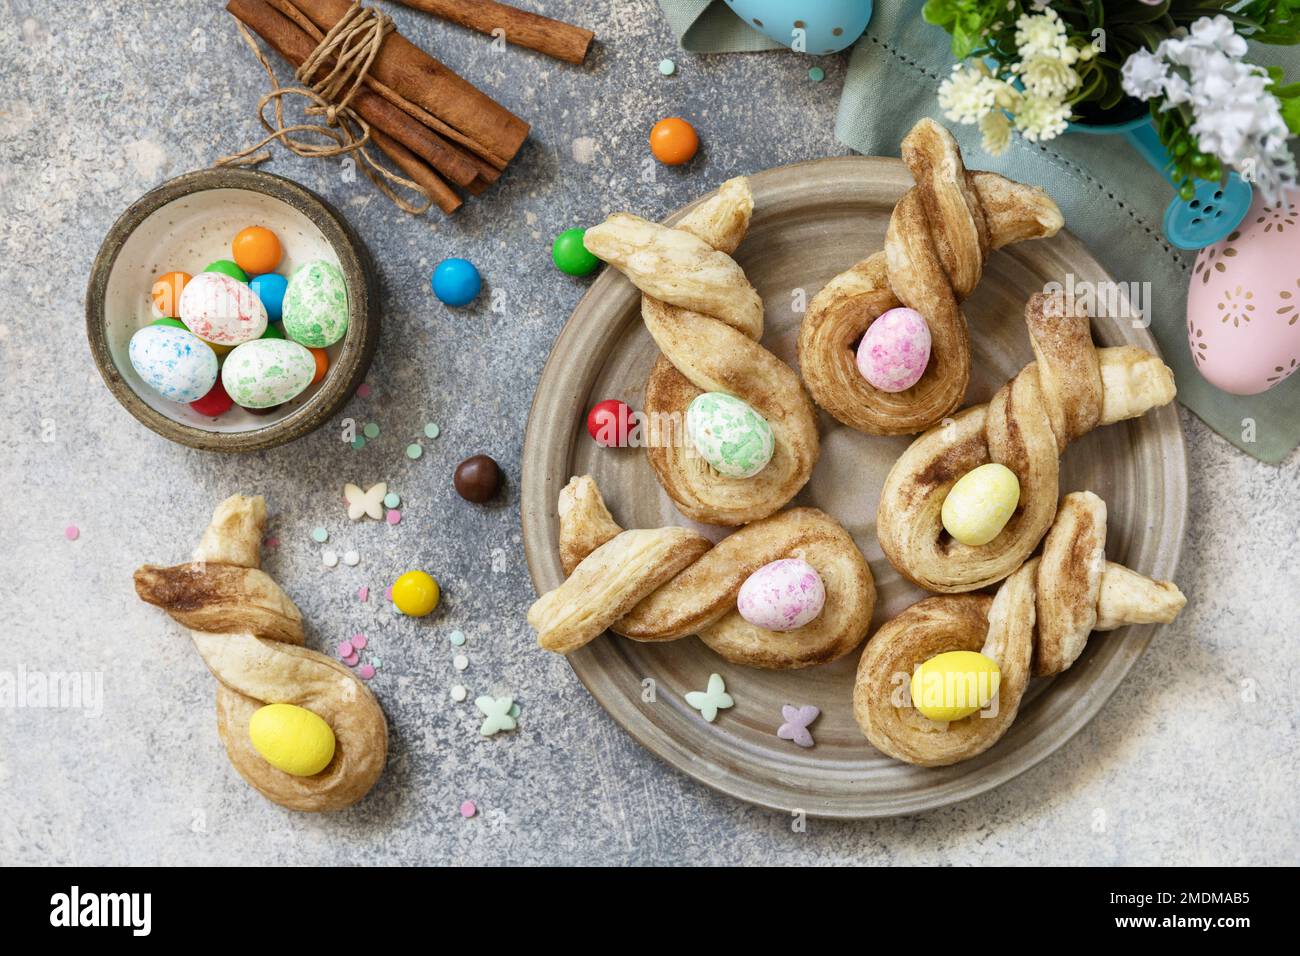 Idée de gâteau de Pâques. Pains de Pâques en forme de lapin pâte feuilletée à la cannelle sur une table en pierre. Vue de dessus. Banque D'Images